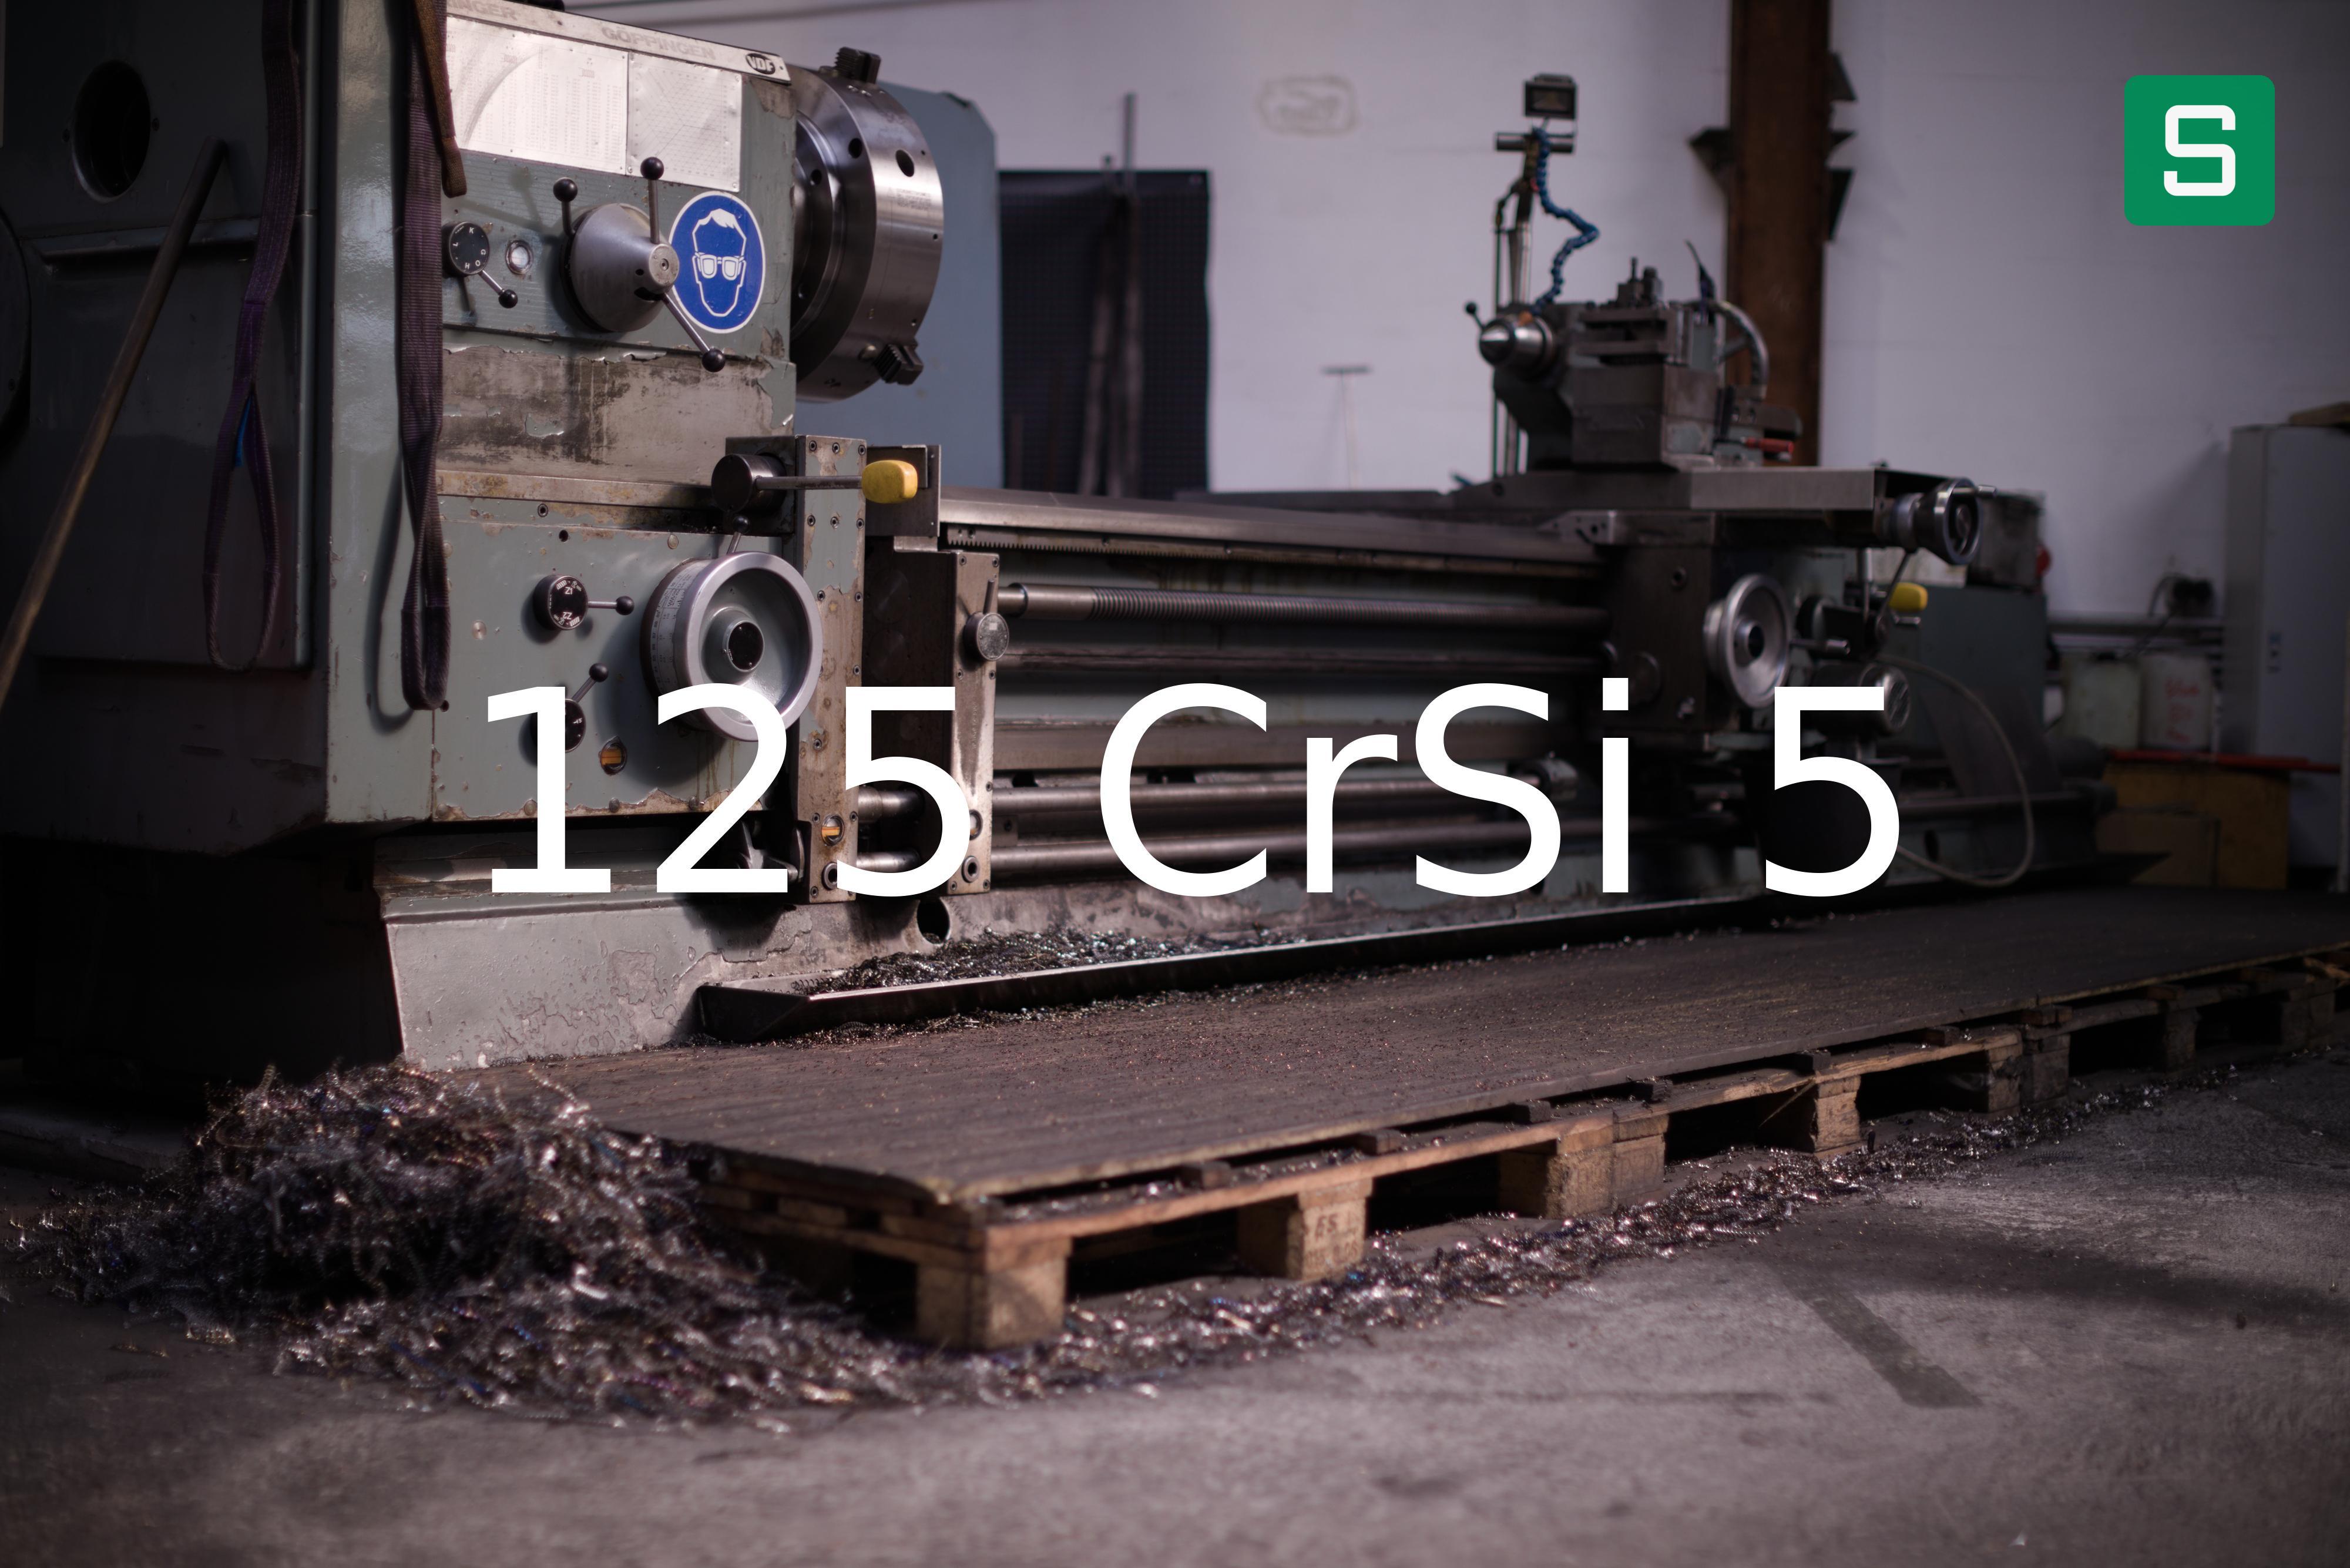 Steel Material: 125 CrSi 5